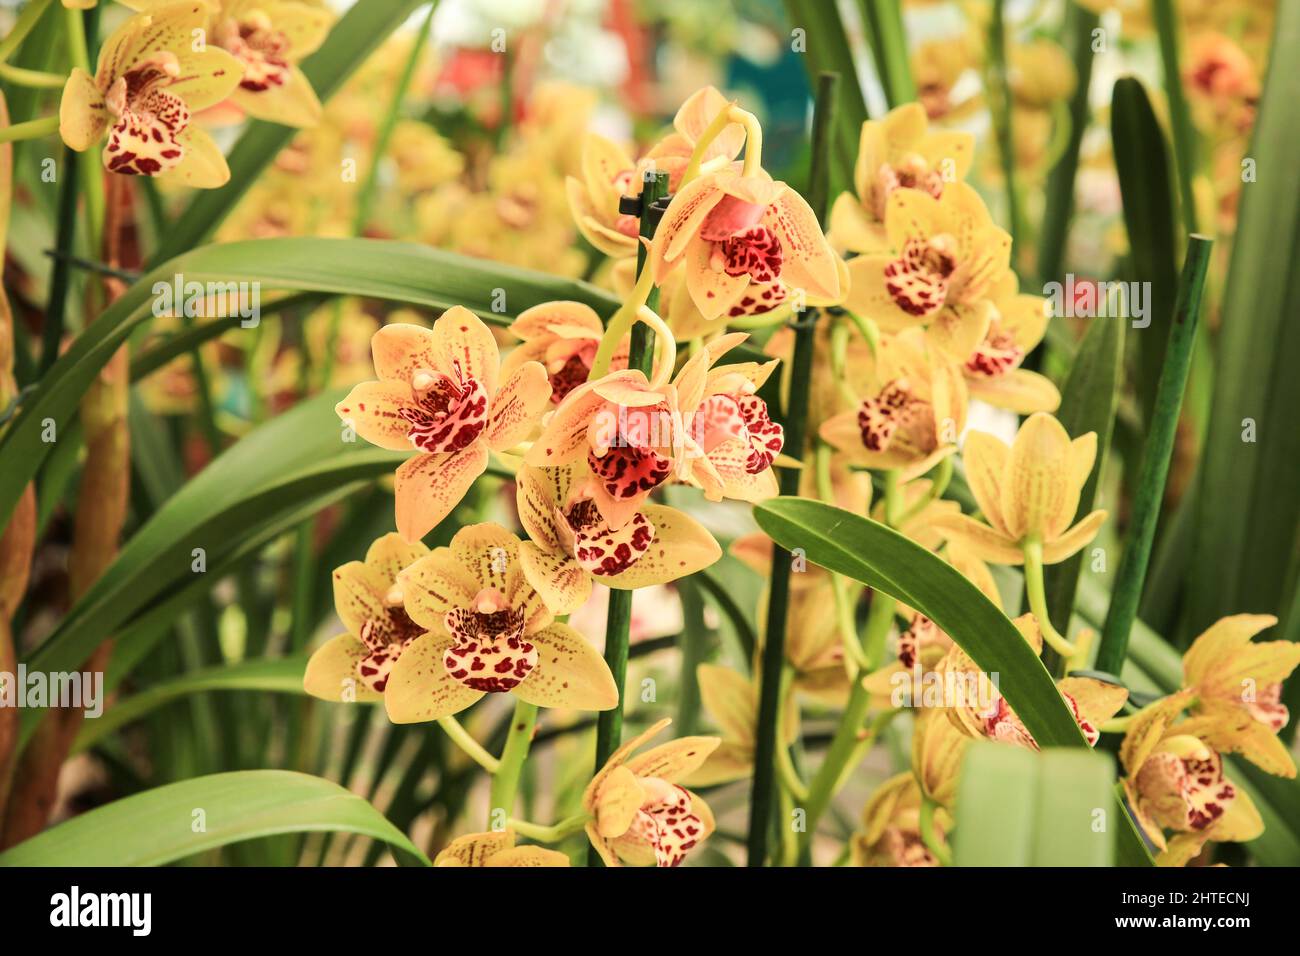 Beautiful Cymbidium orchid in the garden under the sun Stock Photo